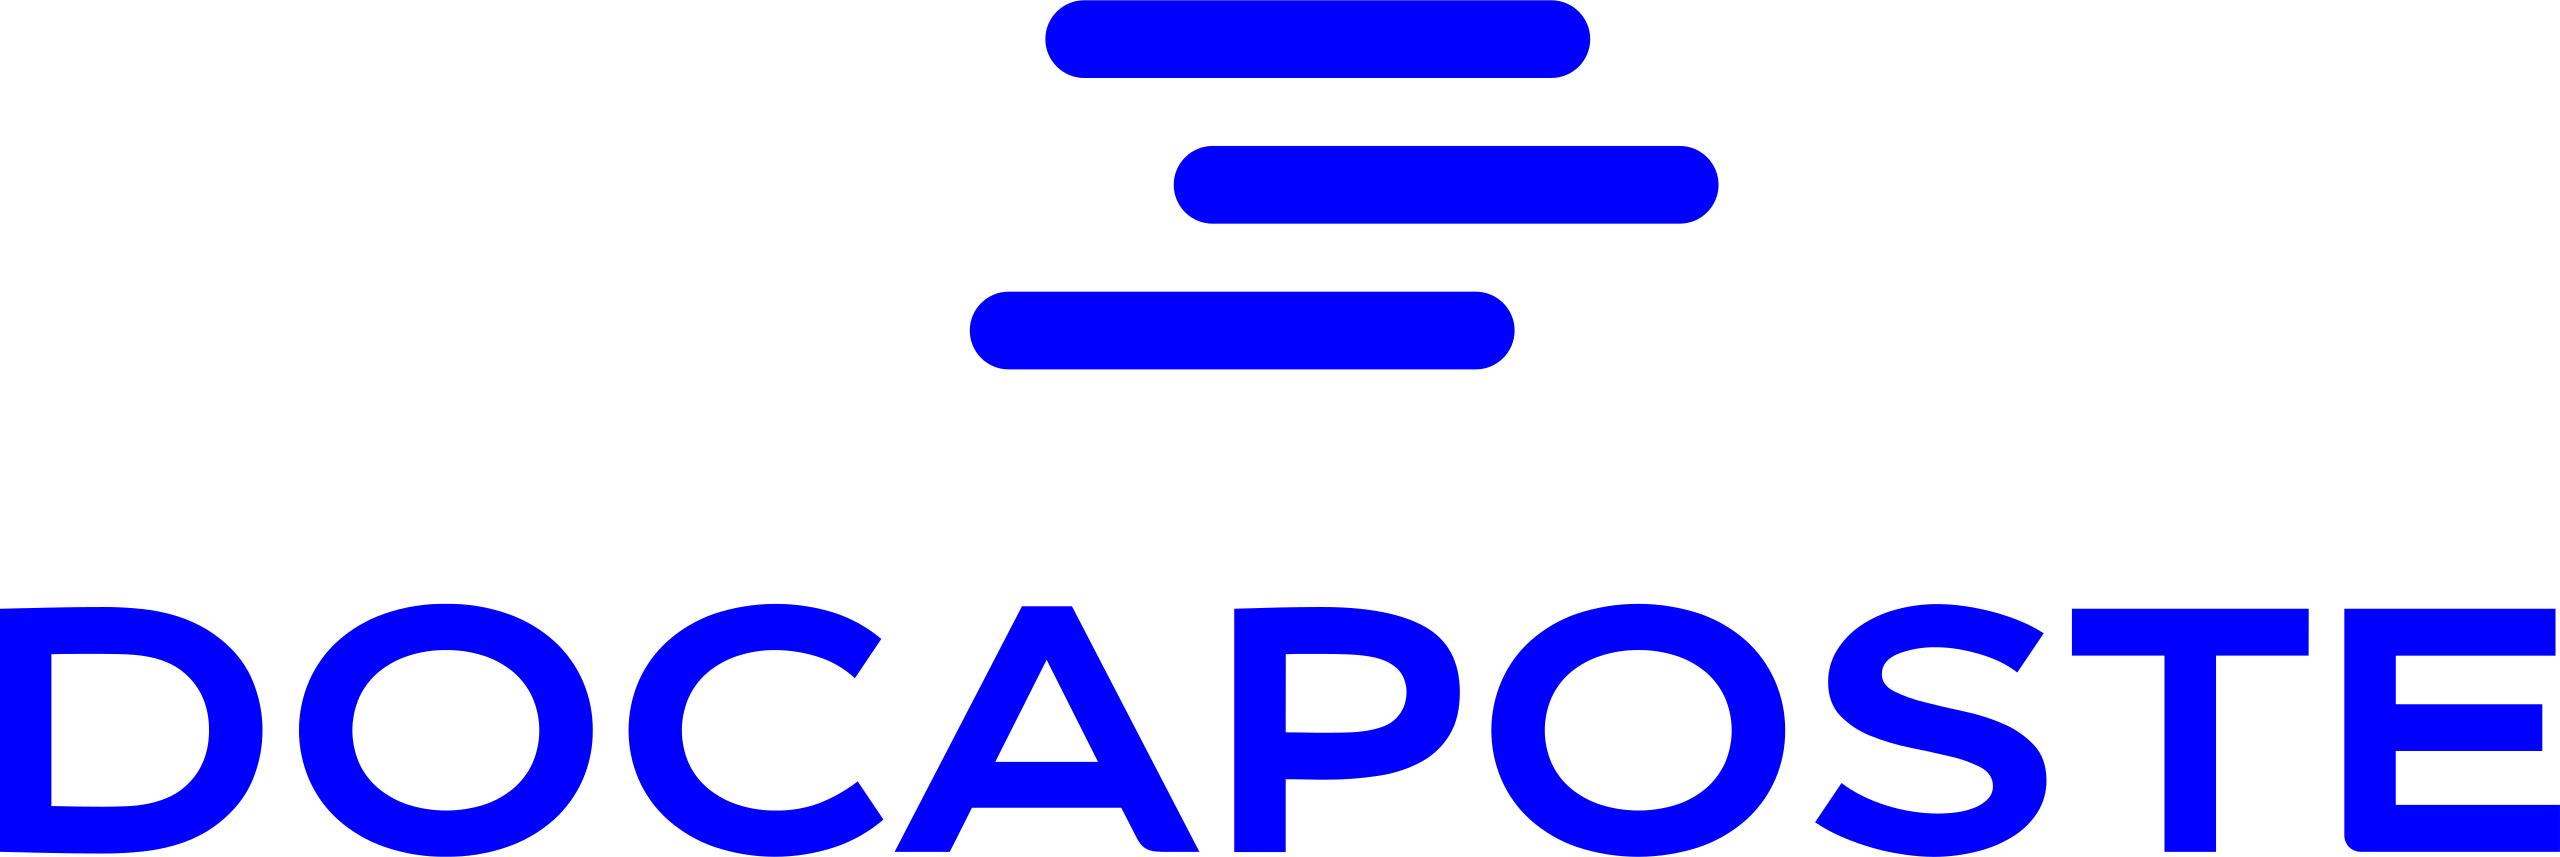 Docaposte-Logo